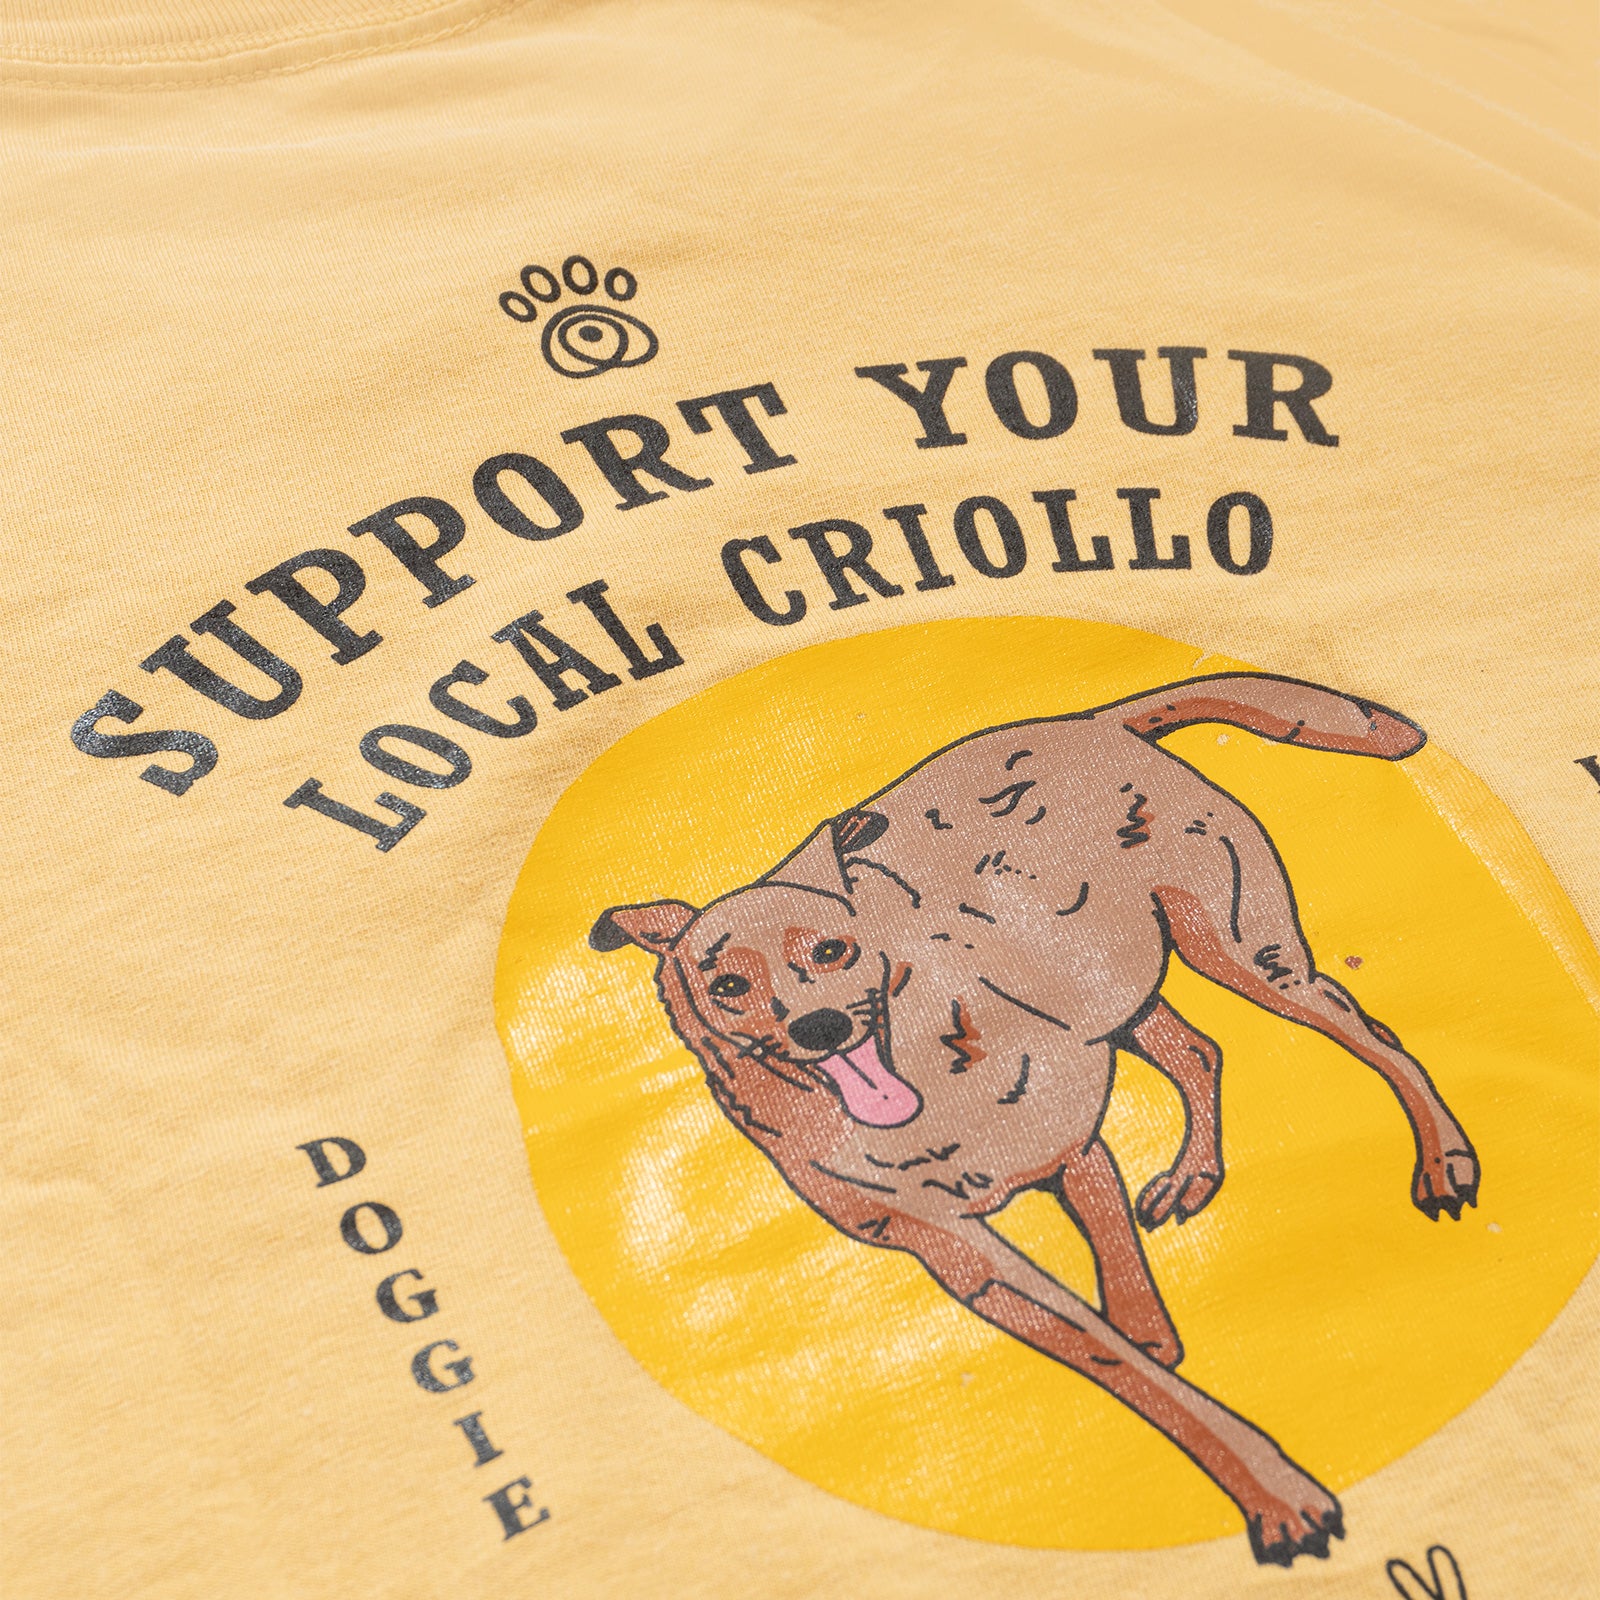 Camiseta "Your local criollo"